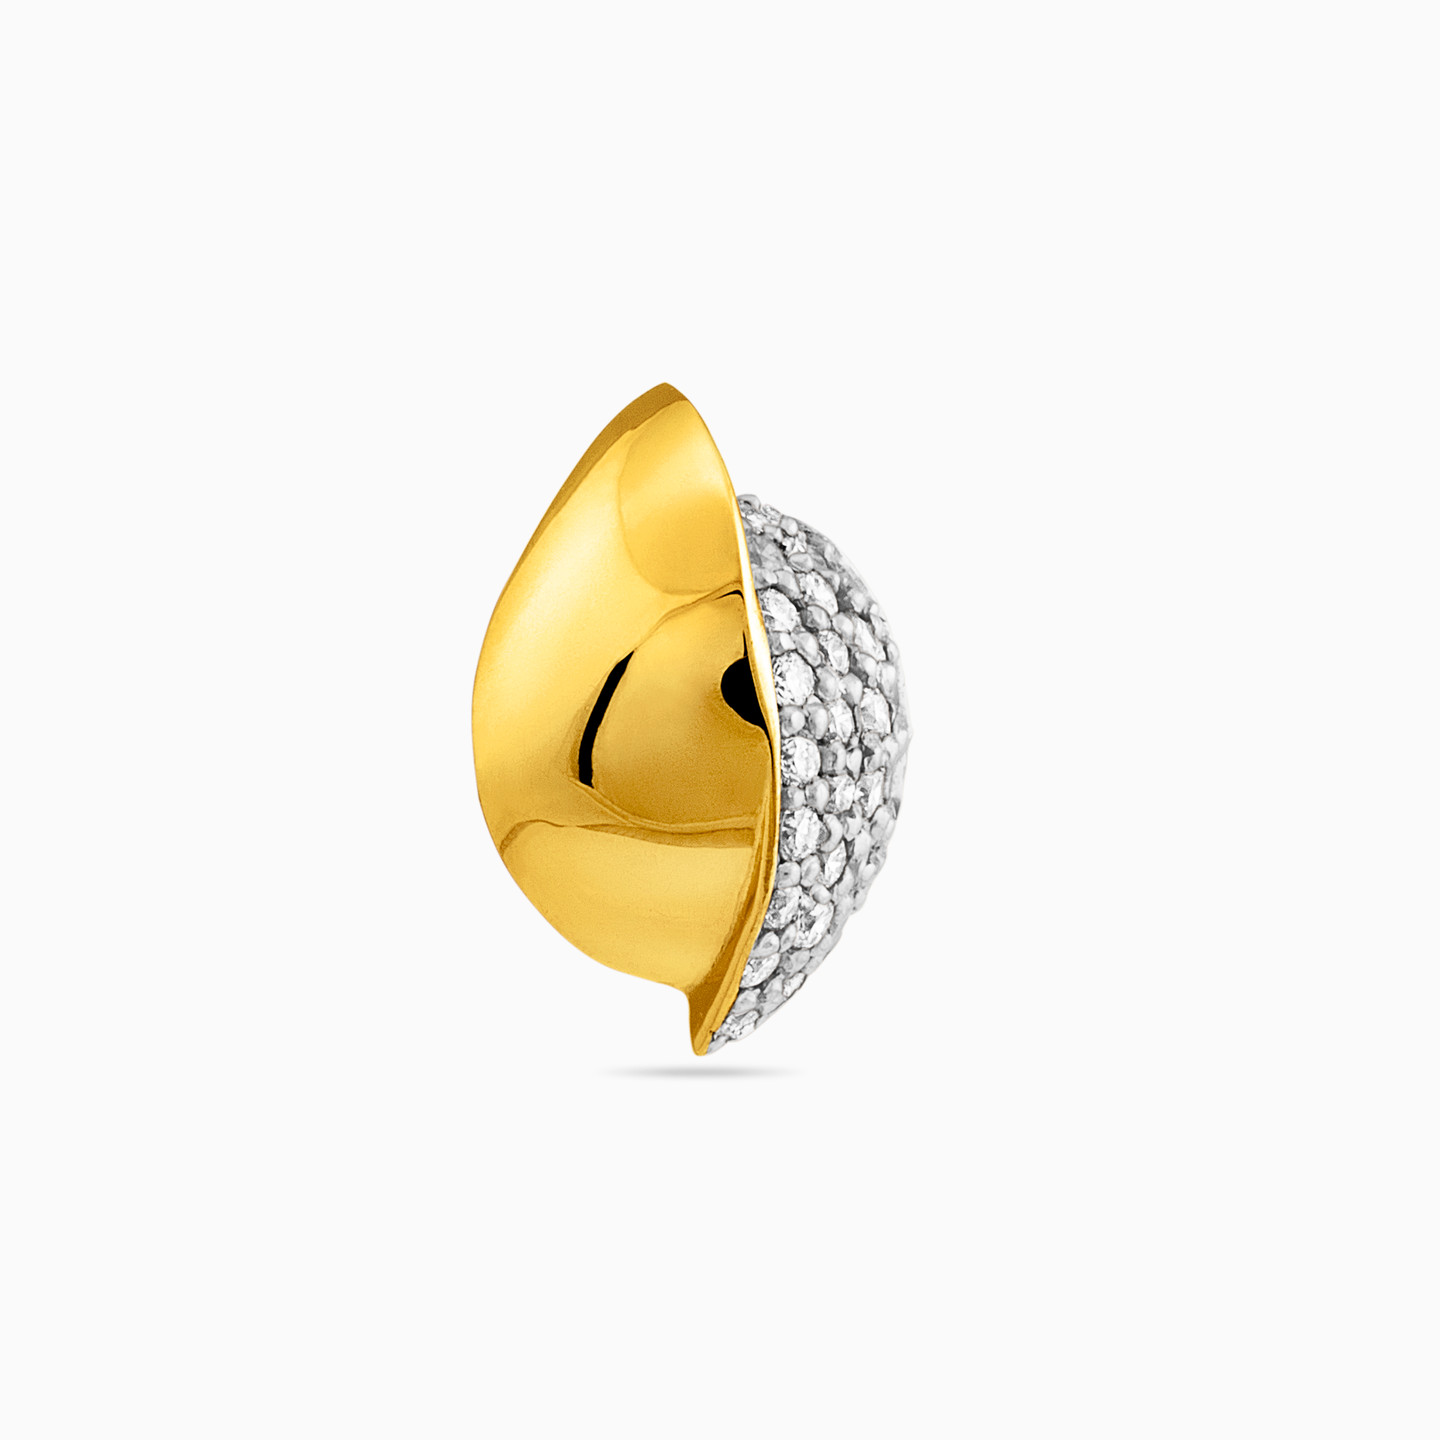 18K Gold Diamond Stud Earrings - 3